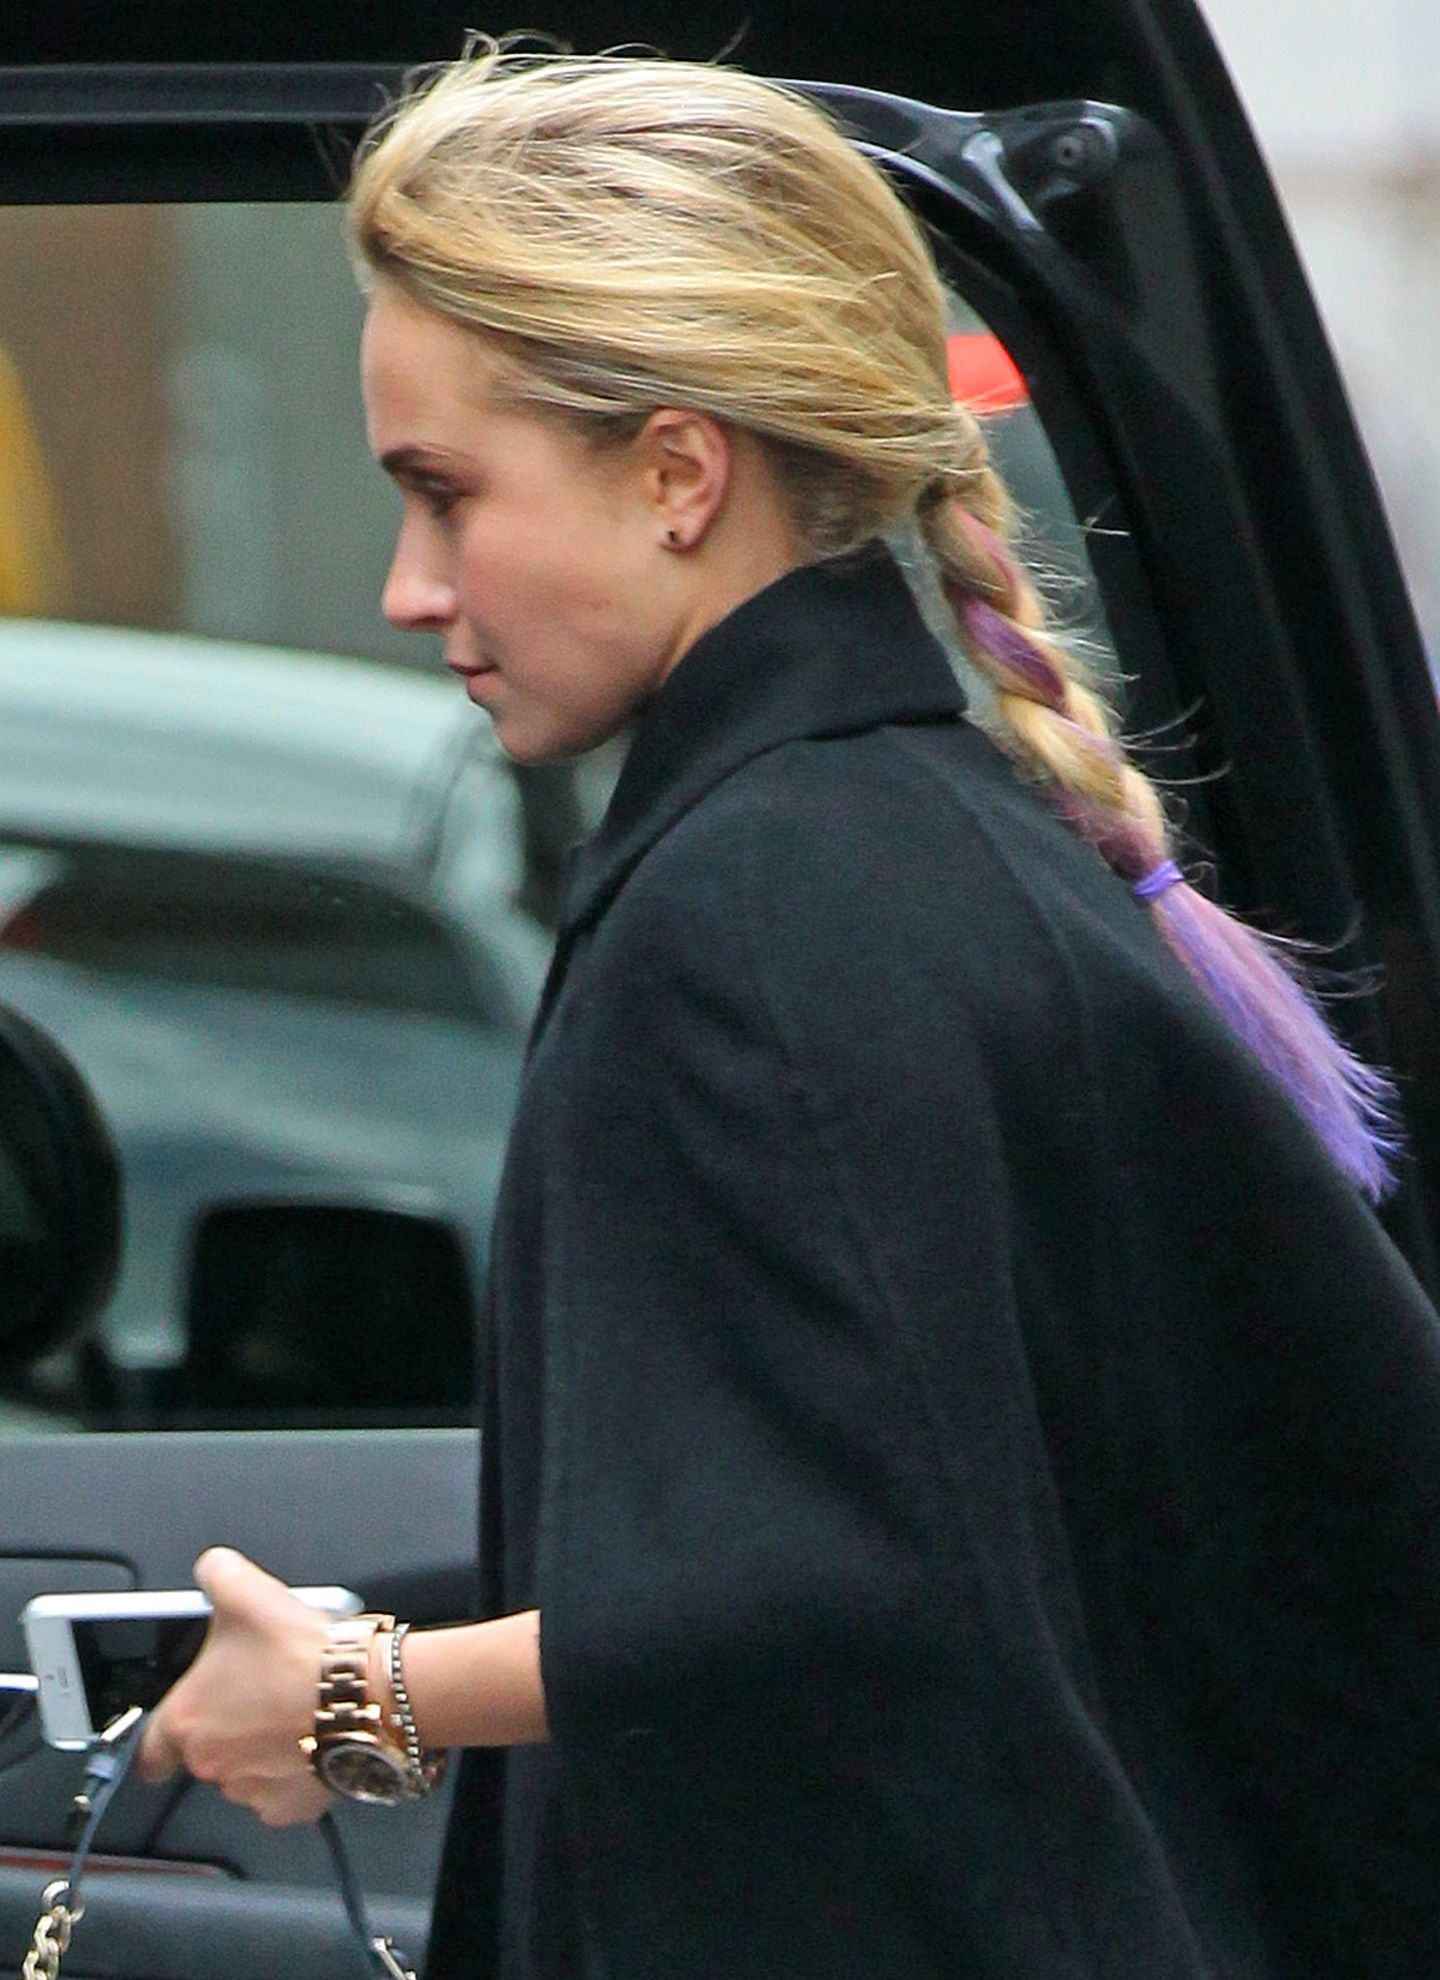 Schauspielerin Hayden Panettiere peppt ihr blondes Haar mit gefärbten Spitzen in leuchtendem Lila auf.